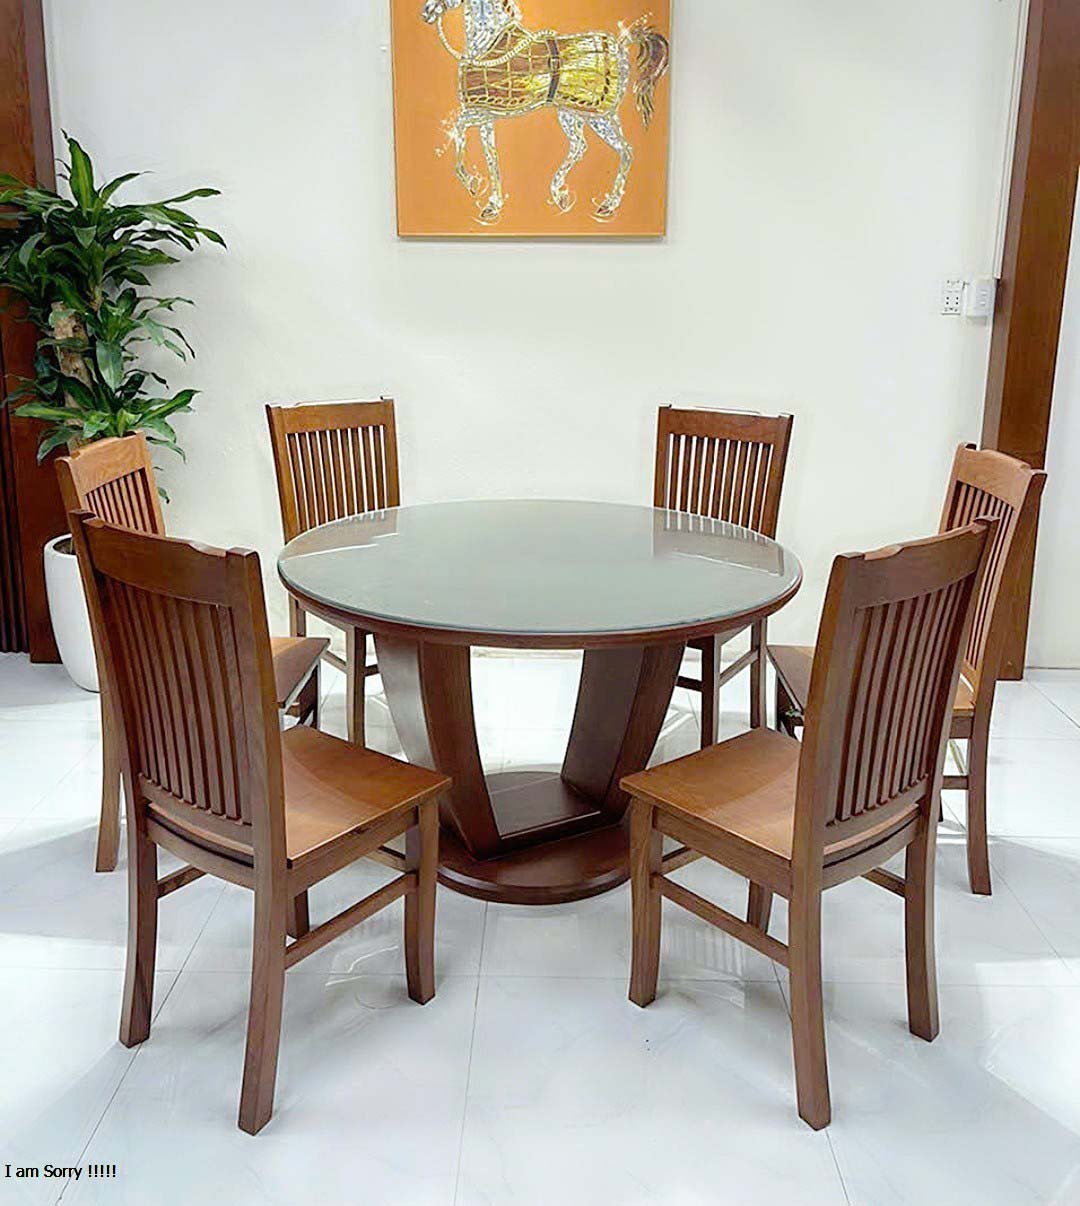 Bộ bàn ăn bàn tròn mẫu mới gỗ sồi, bộ bàn ăn 6 ghế mẫu mới giá rẻ hàng xưởng bao chất